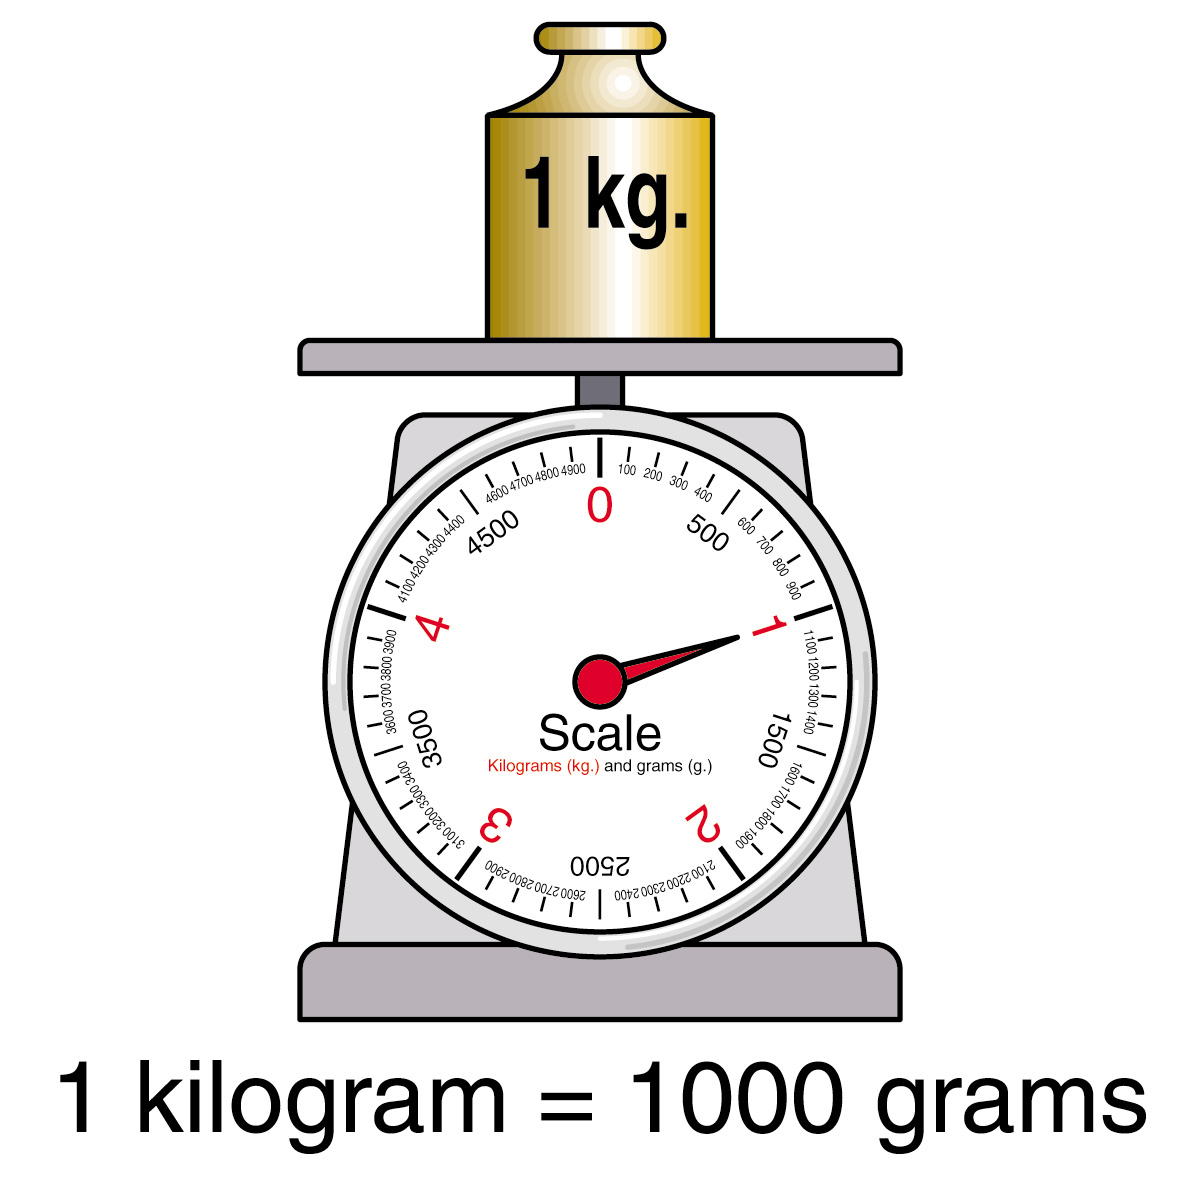 Kilogram Weight drawing free image download